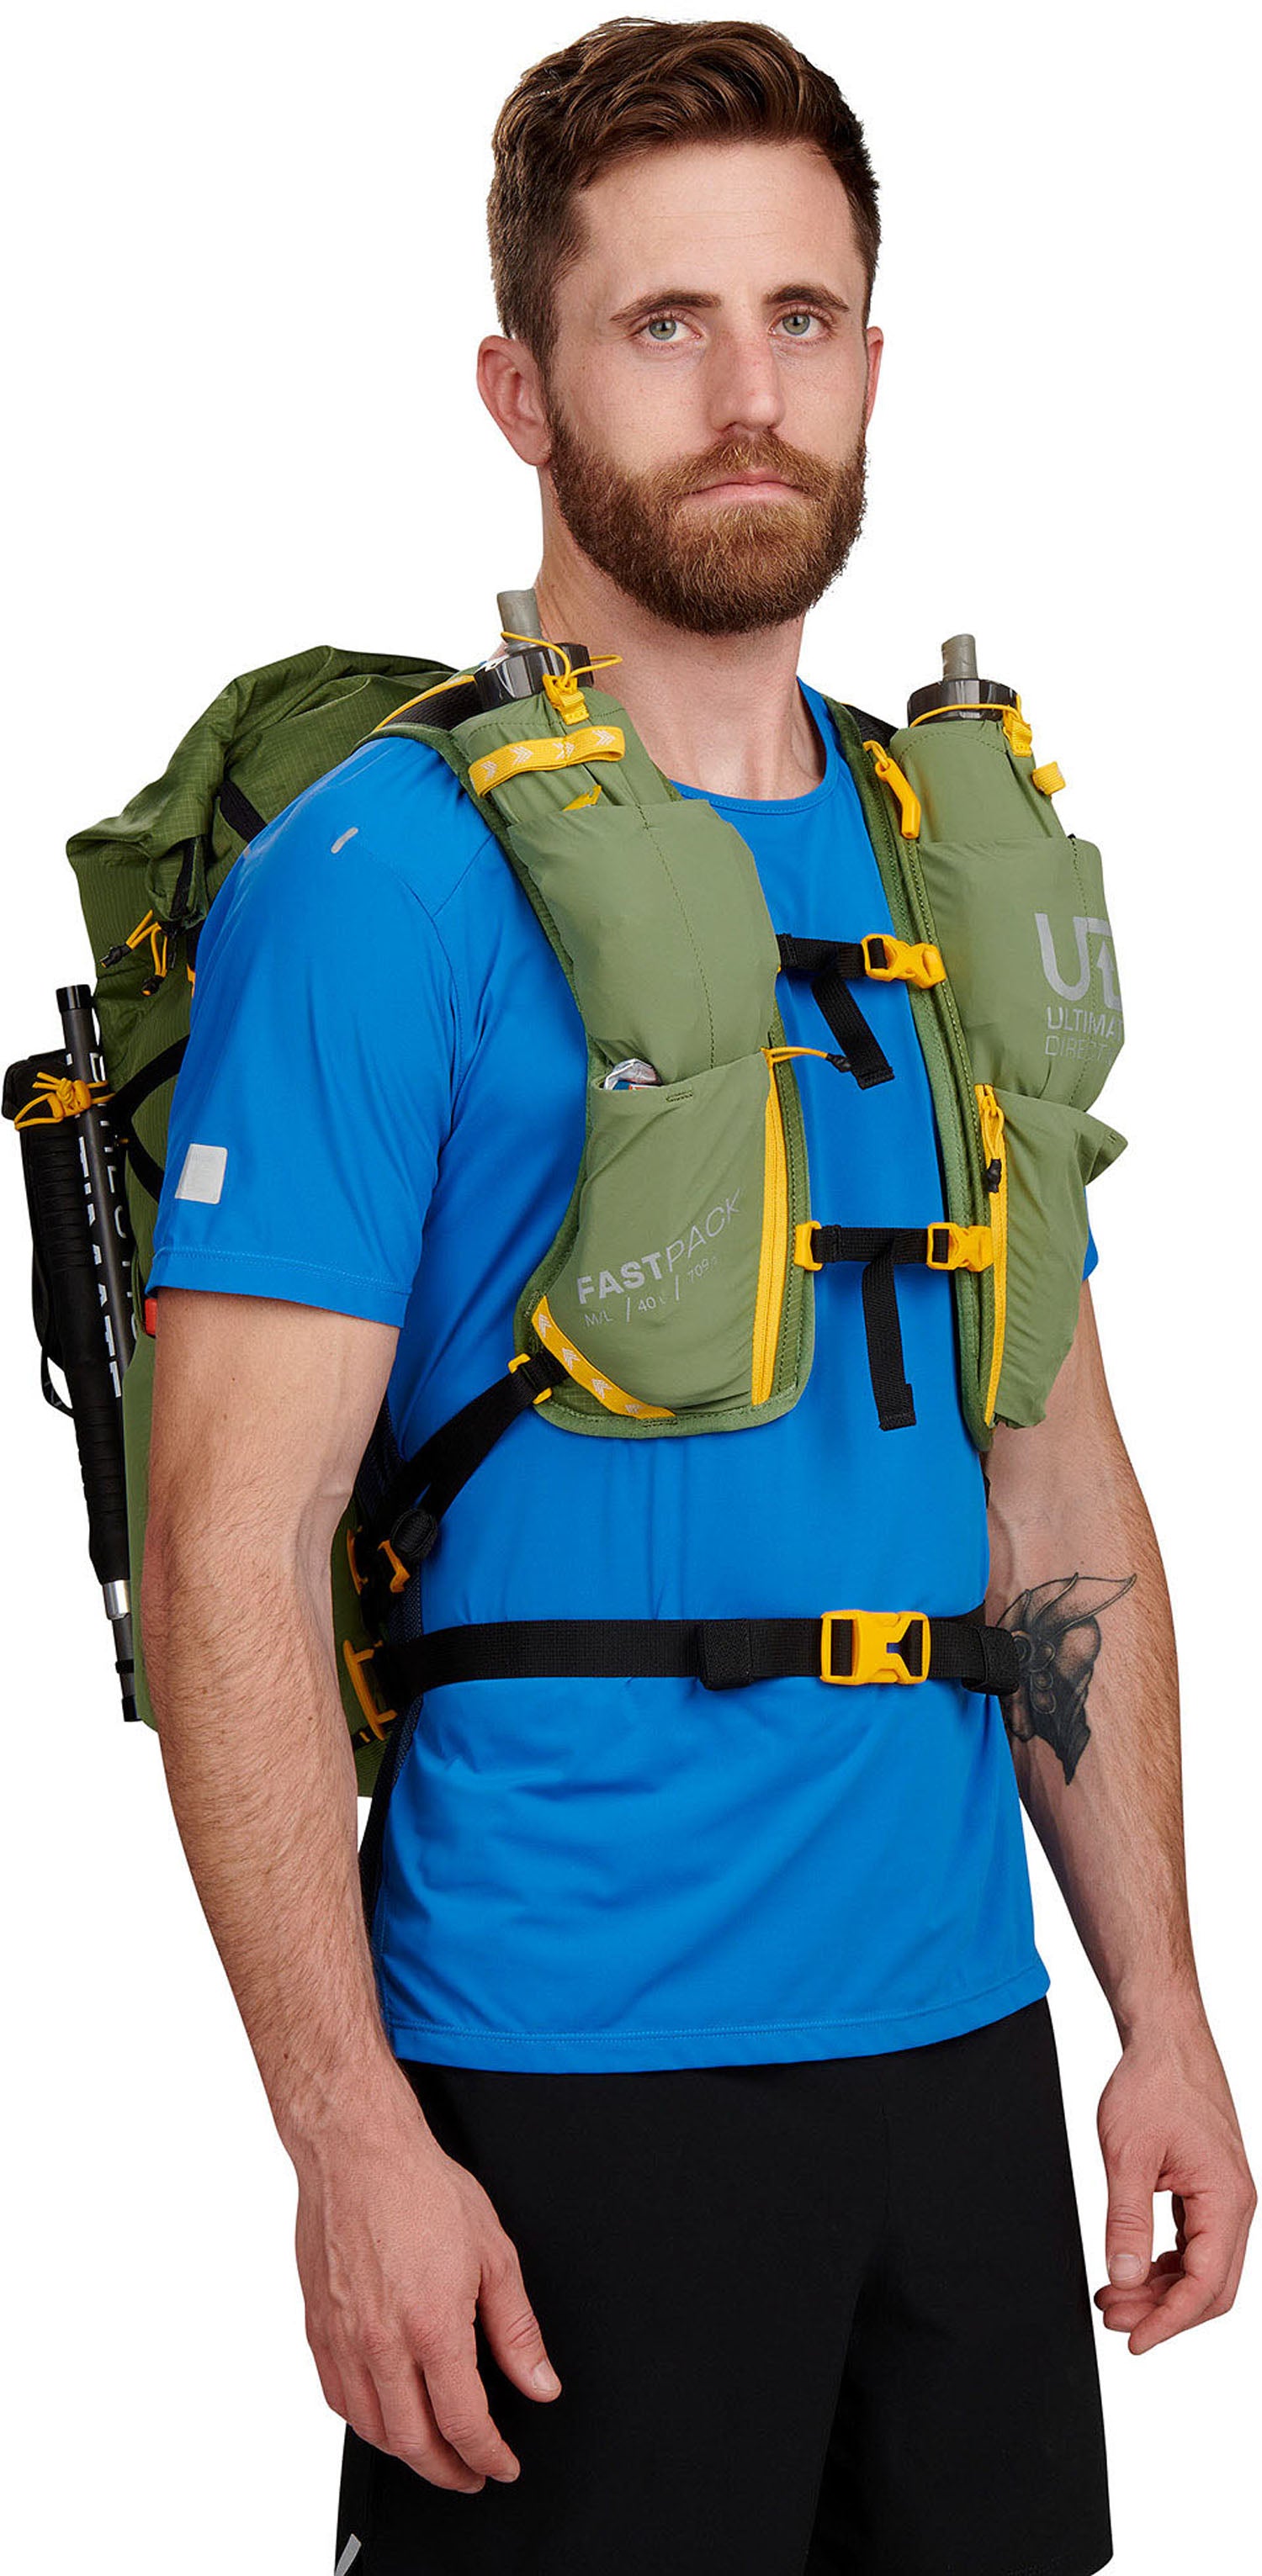 Ultimate Direction Fastpack 40 Backpack - Men's | Altitude Sports